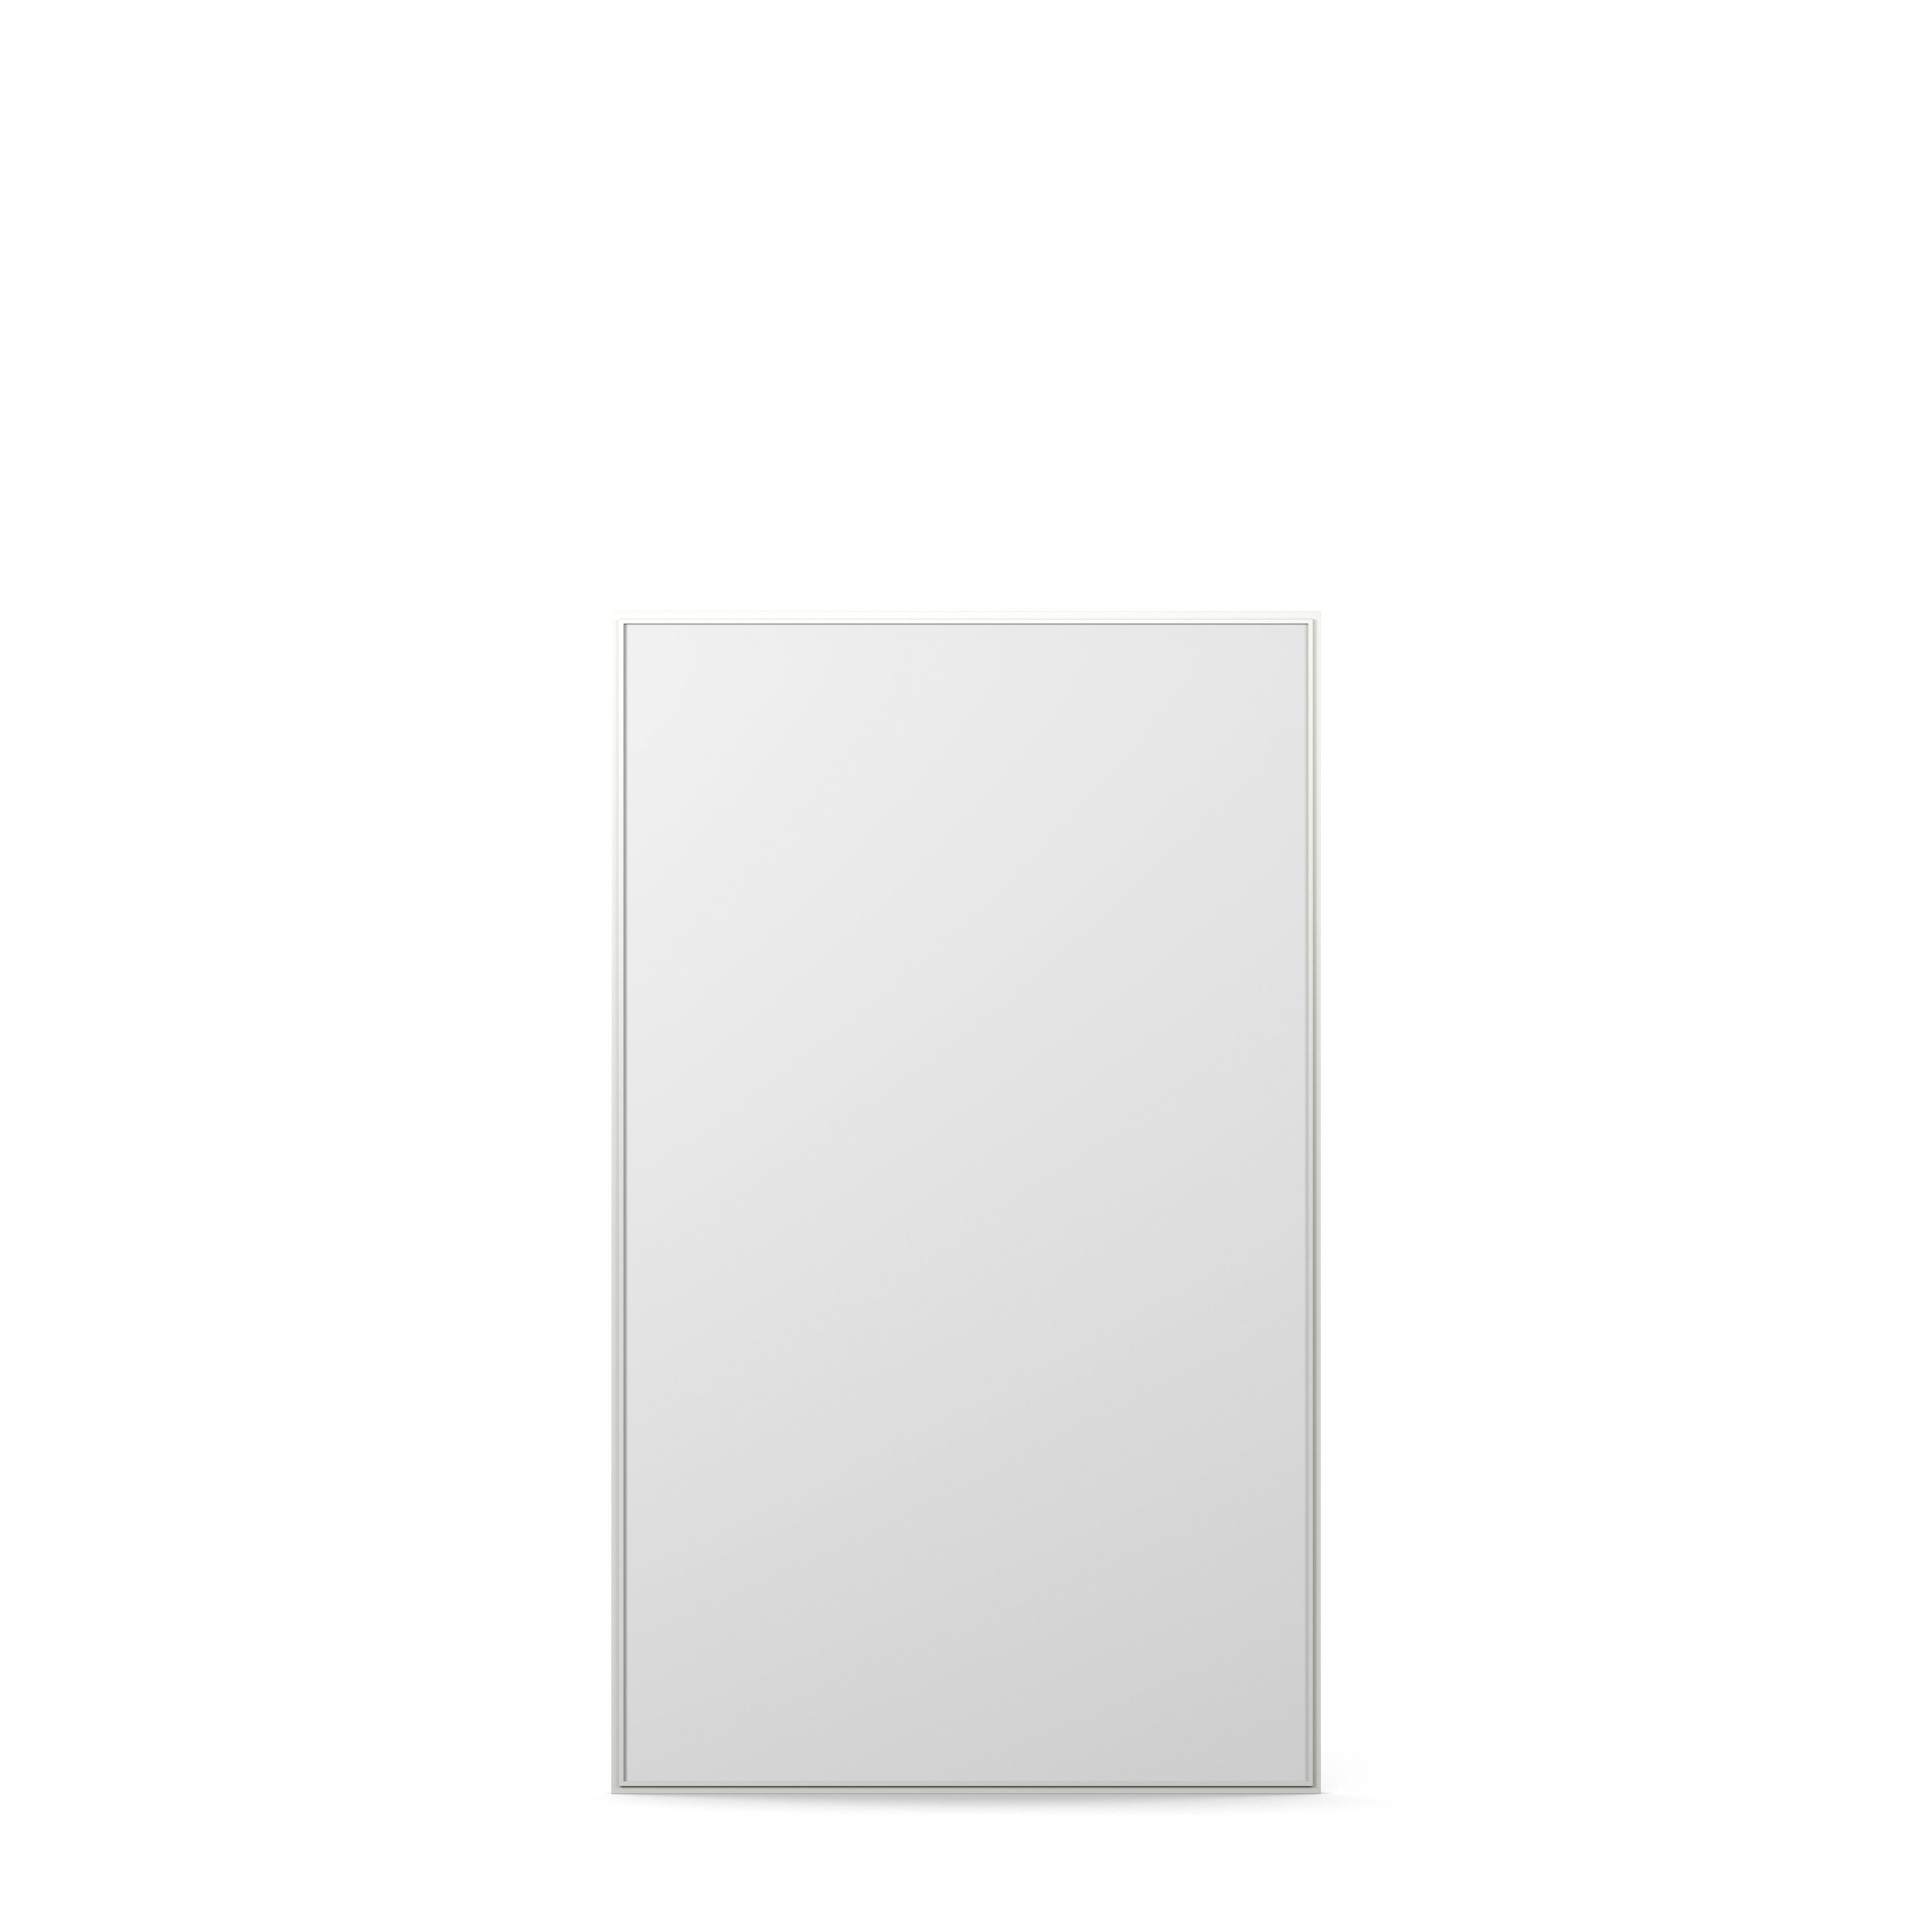 Englesson Edge White Cube Spegel Rektangulär 831D #Variant_Edge White 